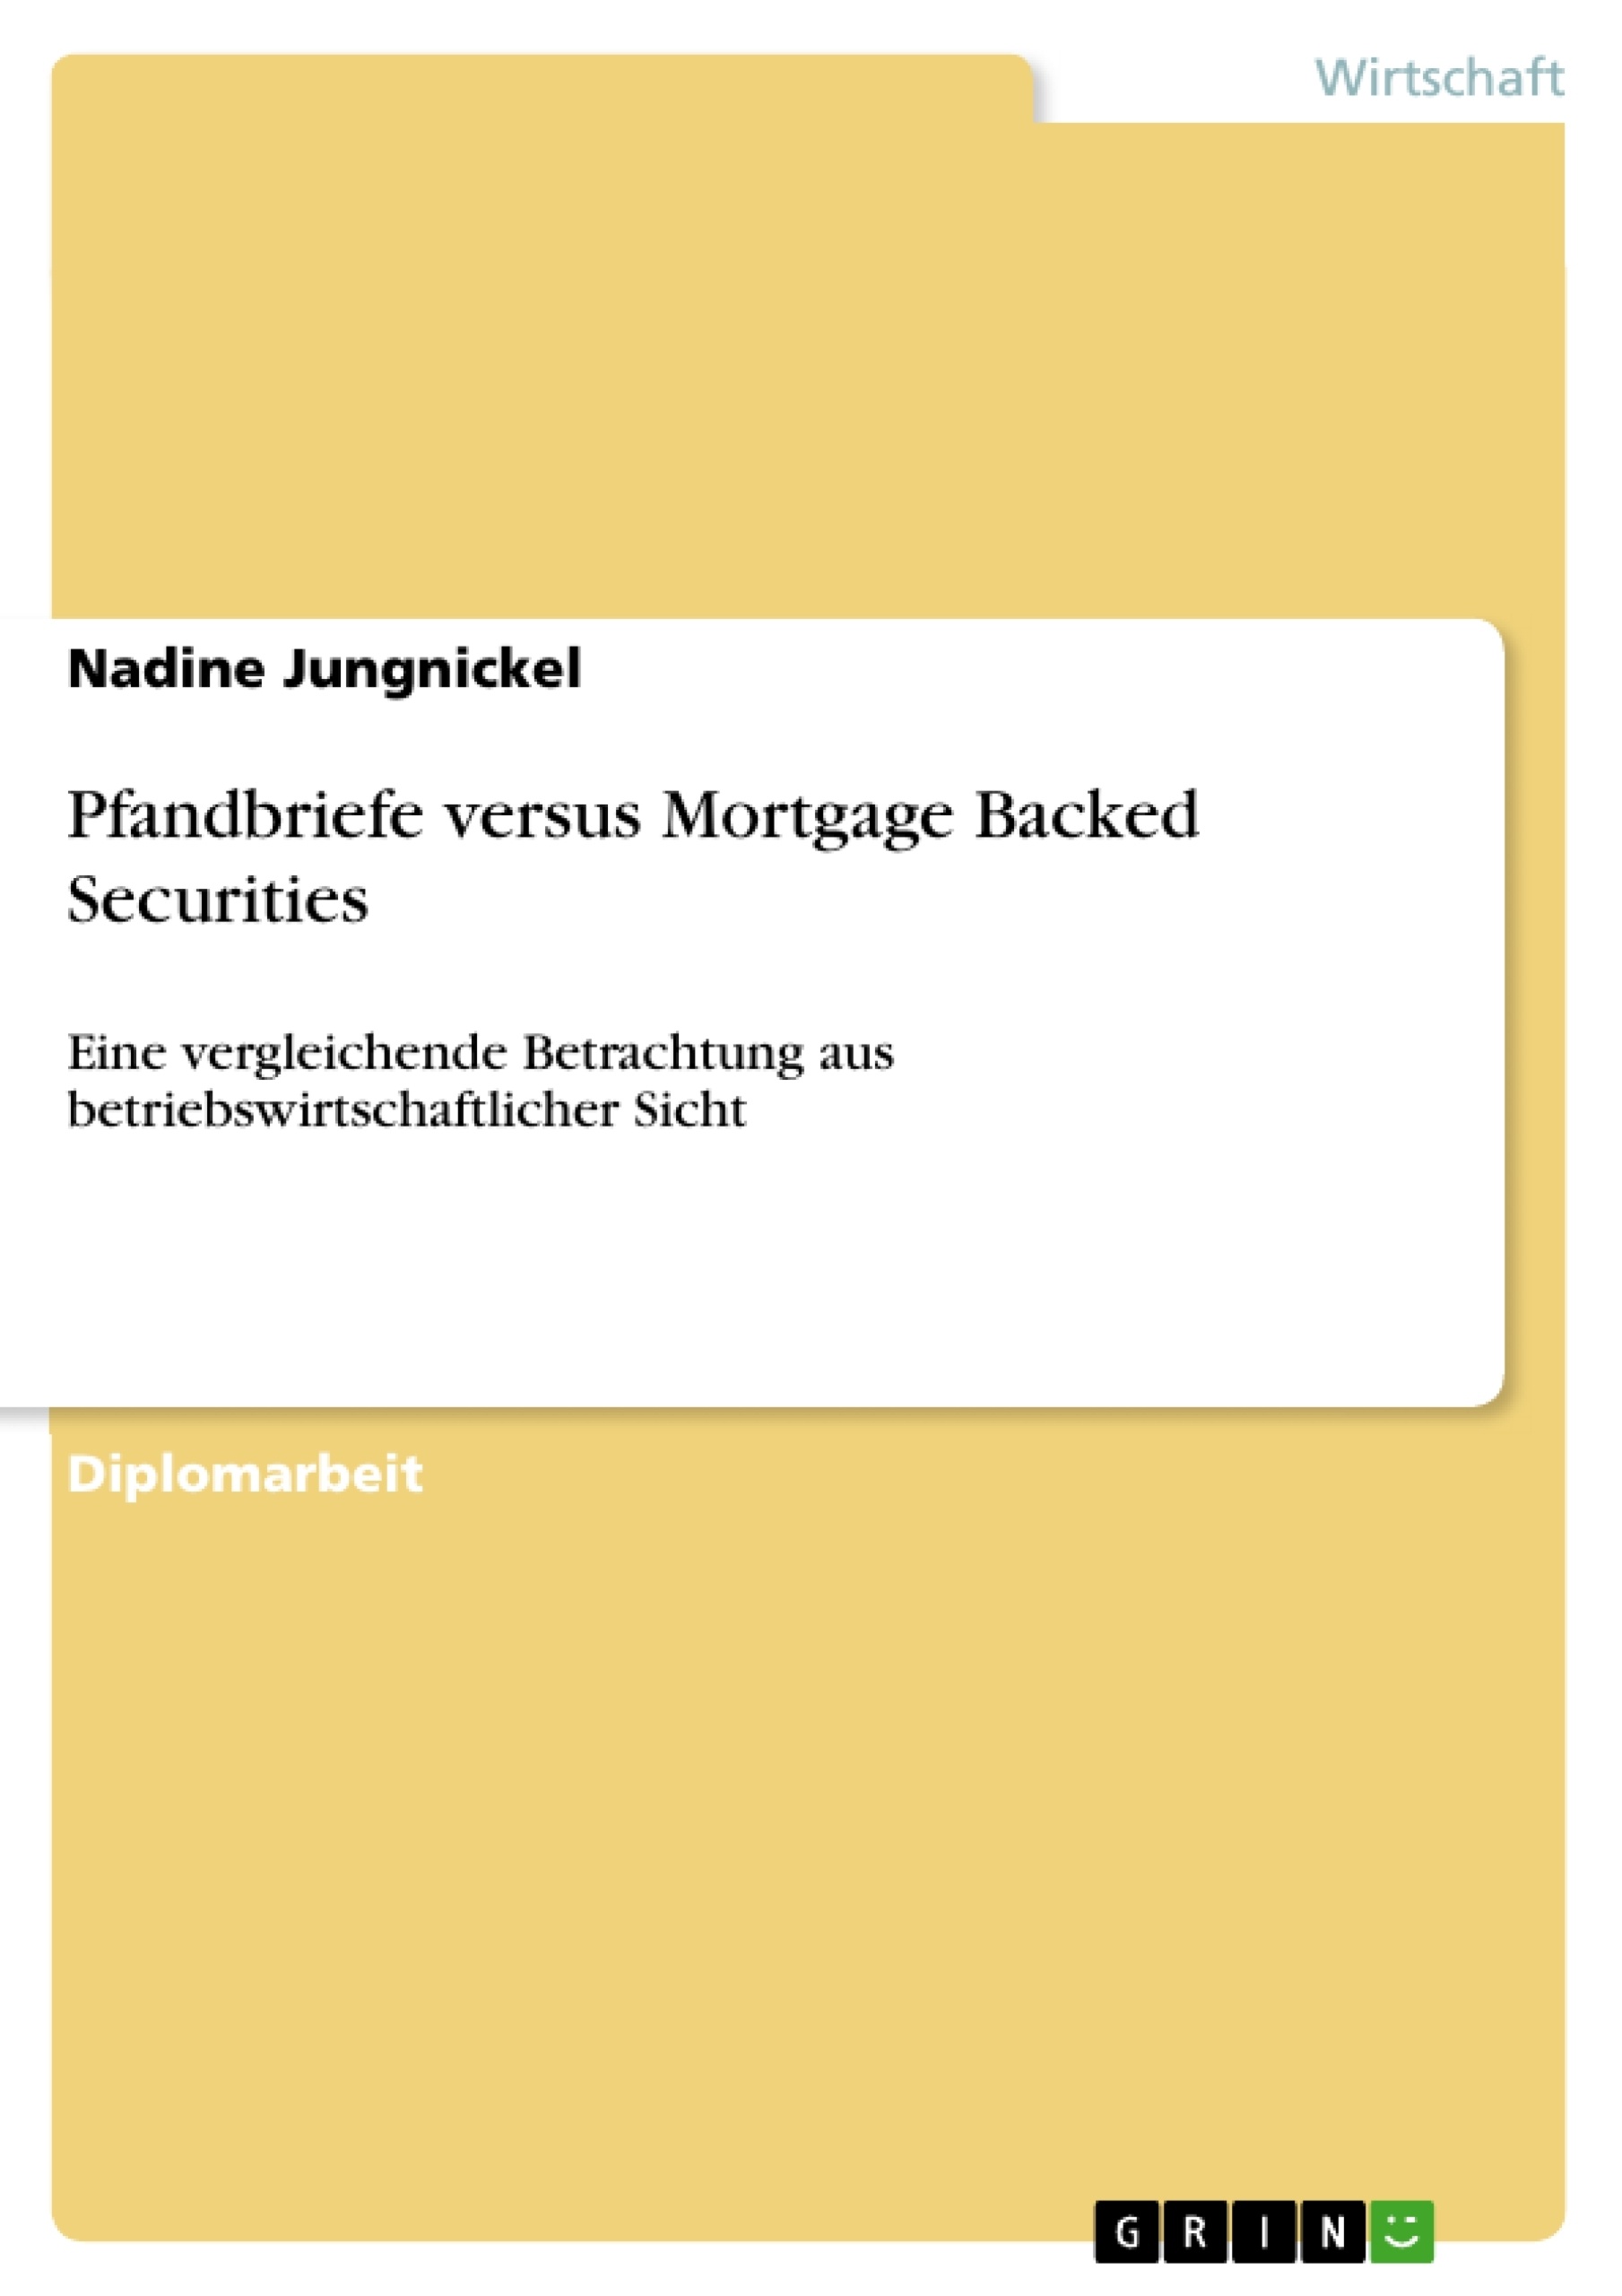 Título: Pfandbriefe versus Mortgage Backed Securities